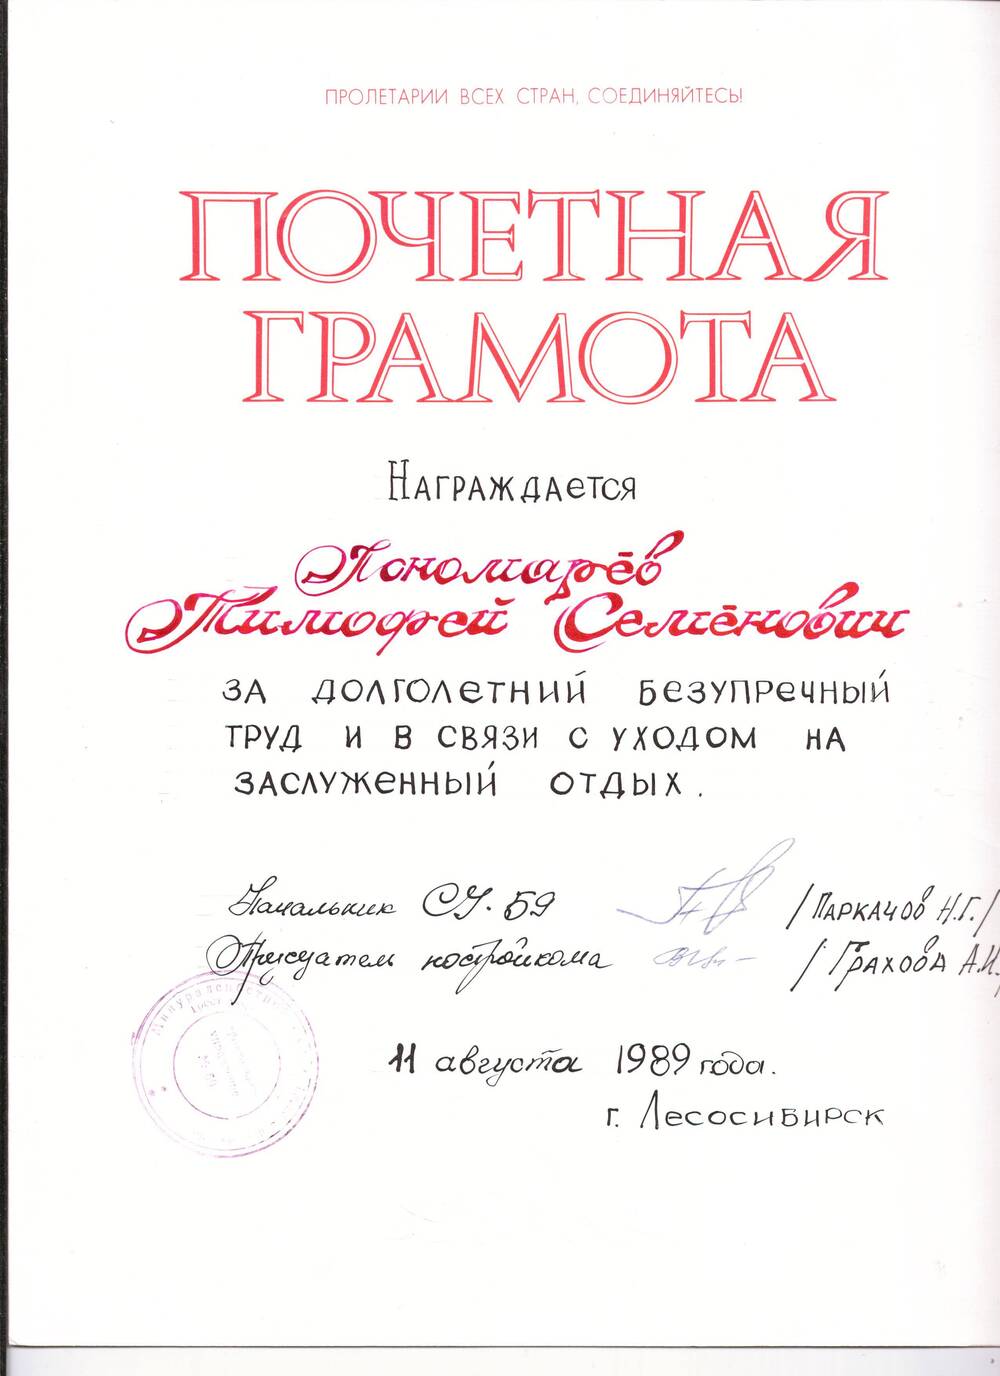 Грамота почетная  Пономареву Тимофею Семеновичу, от 11.08.1989г со сгибом